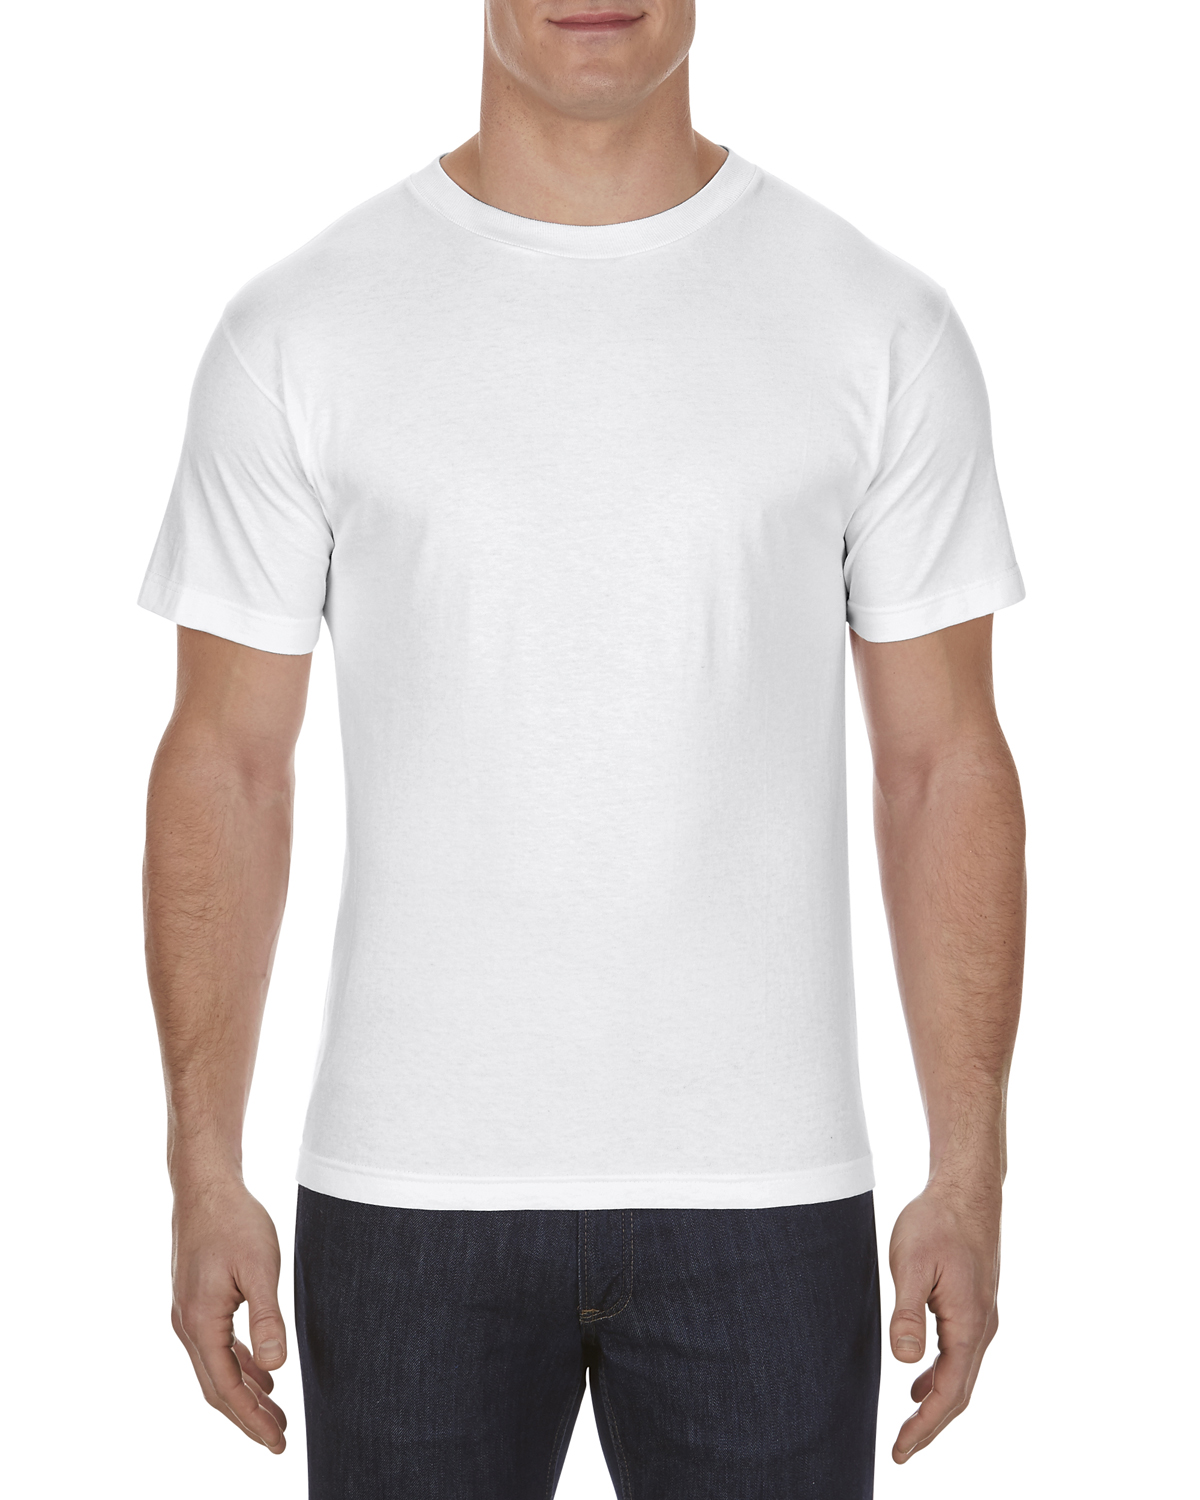 'Alstyle AL1301 Adult 6.0 oz., 100% Cotton T Shirt'